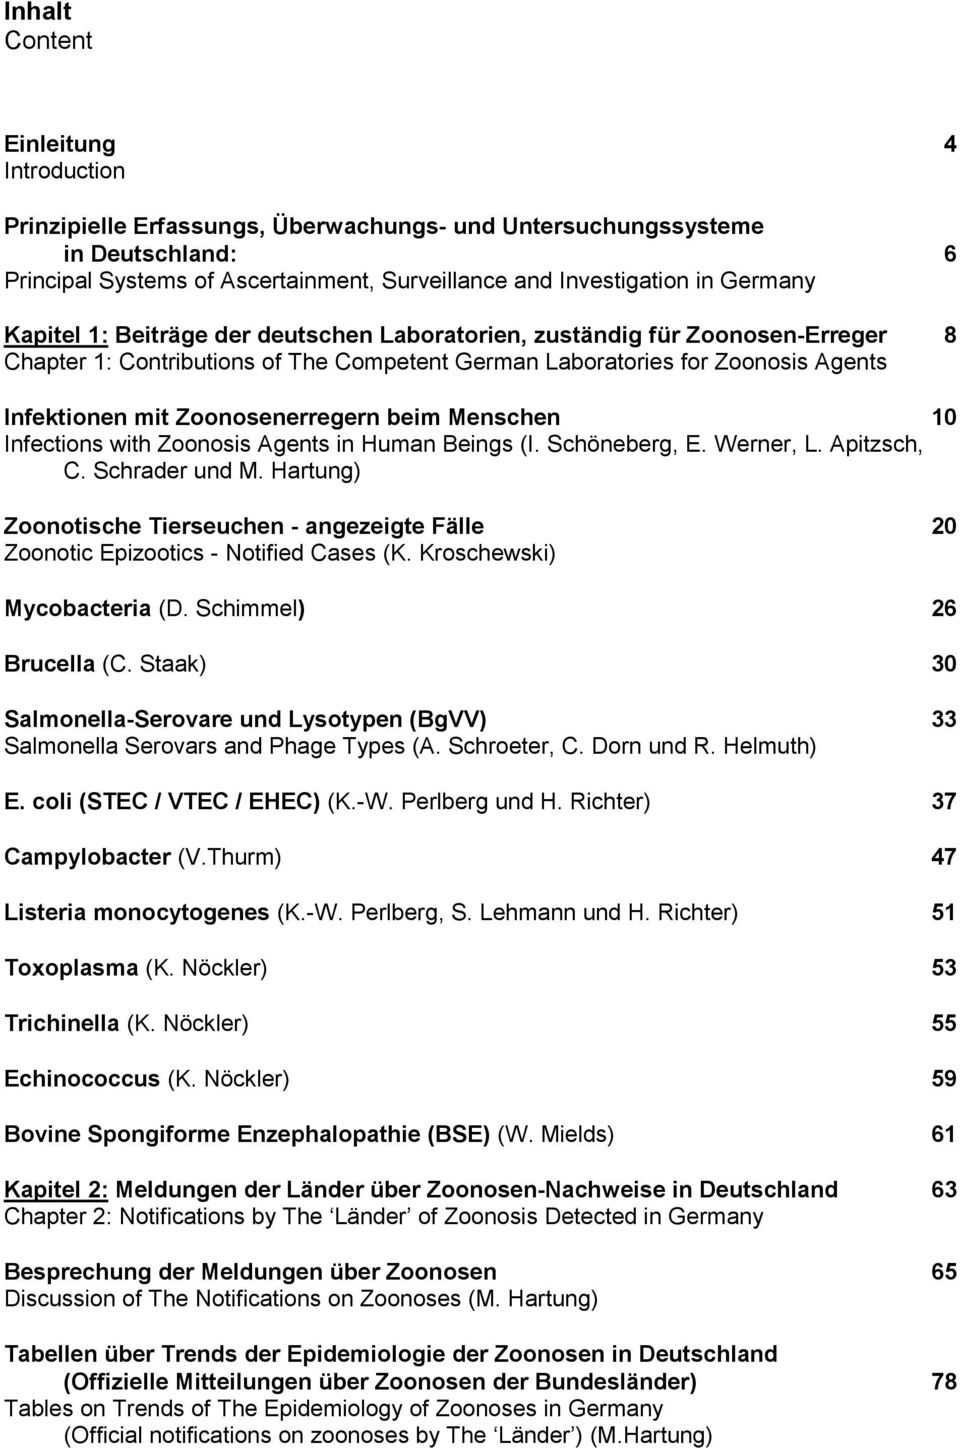 Zoonosenerregern beim Menschen 10 Infections with Zoonosis Agents in Human Beings (I. Schöneberg, E. Werner, L. Apitzsch, C. Schrader und M.